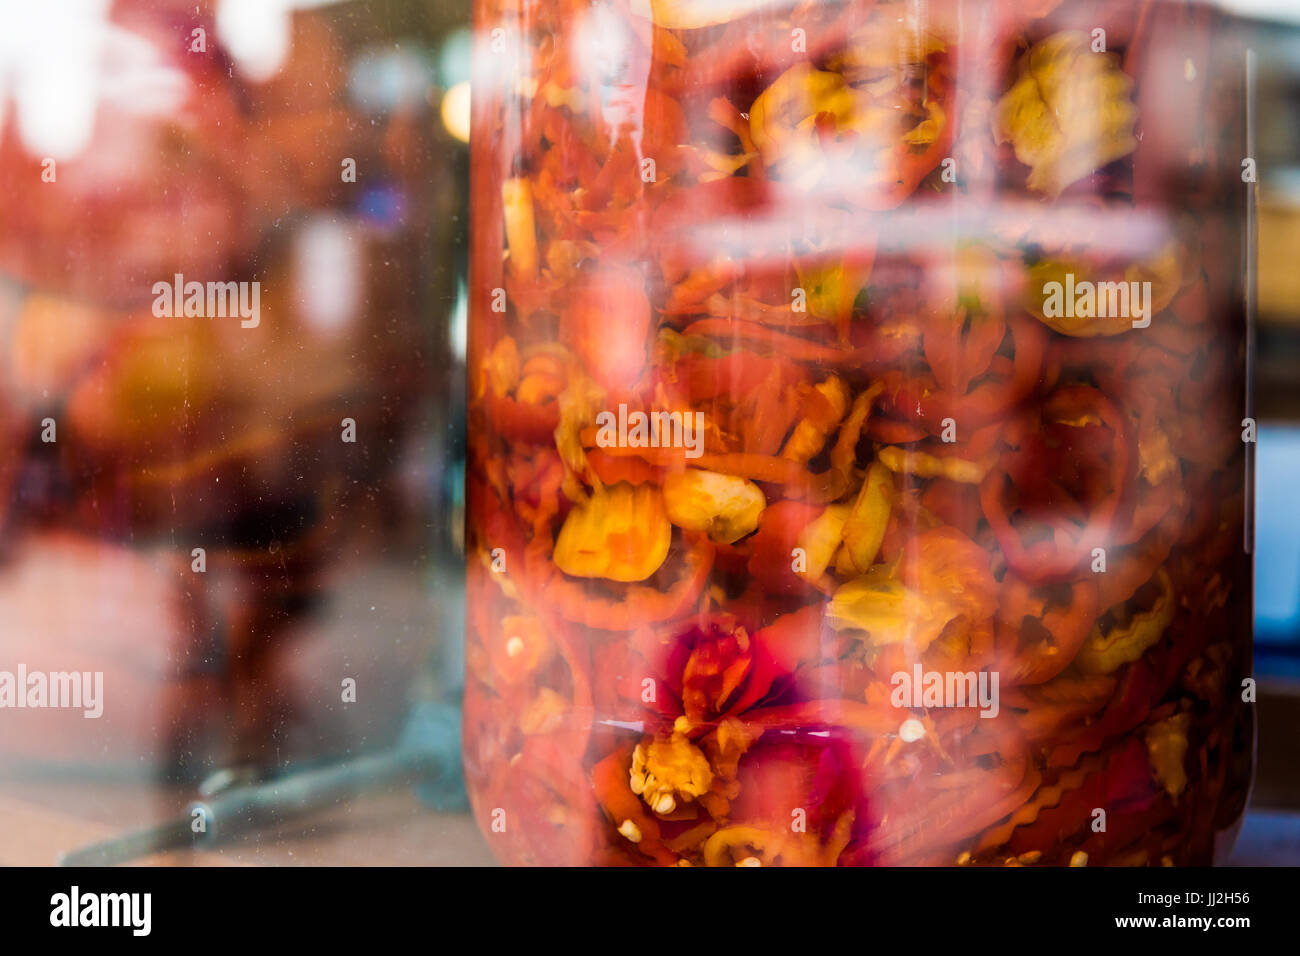 Les poivrons jaunes et rouges marinés dans de grands bols à l'écran derrière le hublot en verre Banque D'Images